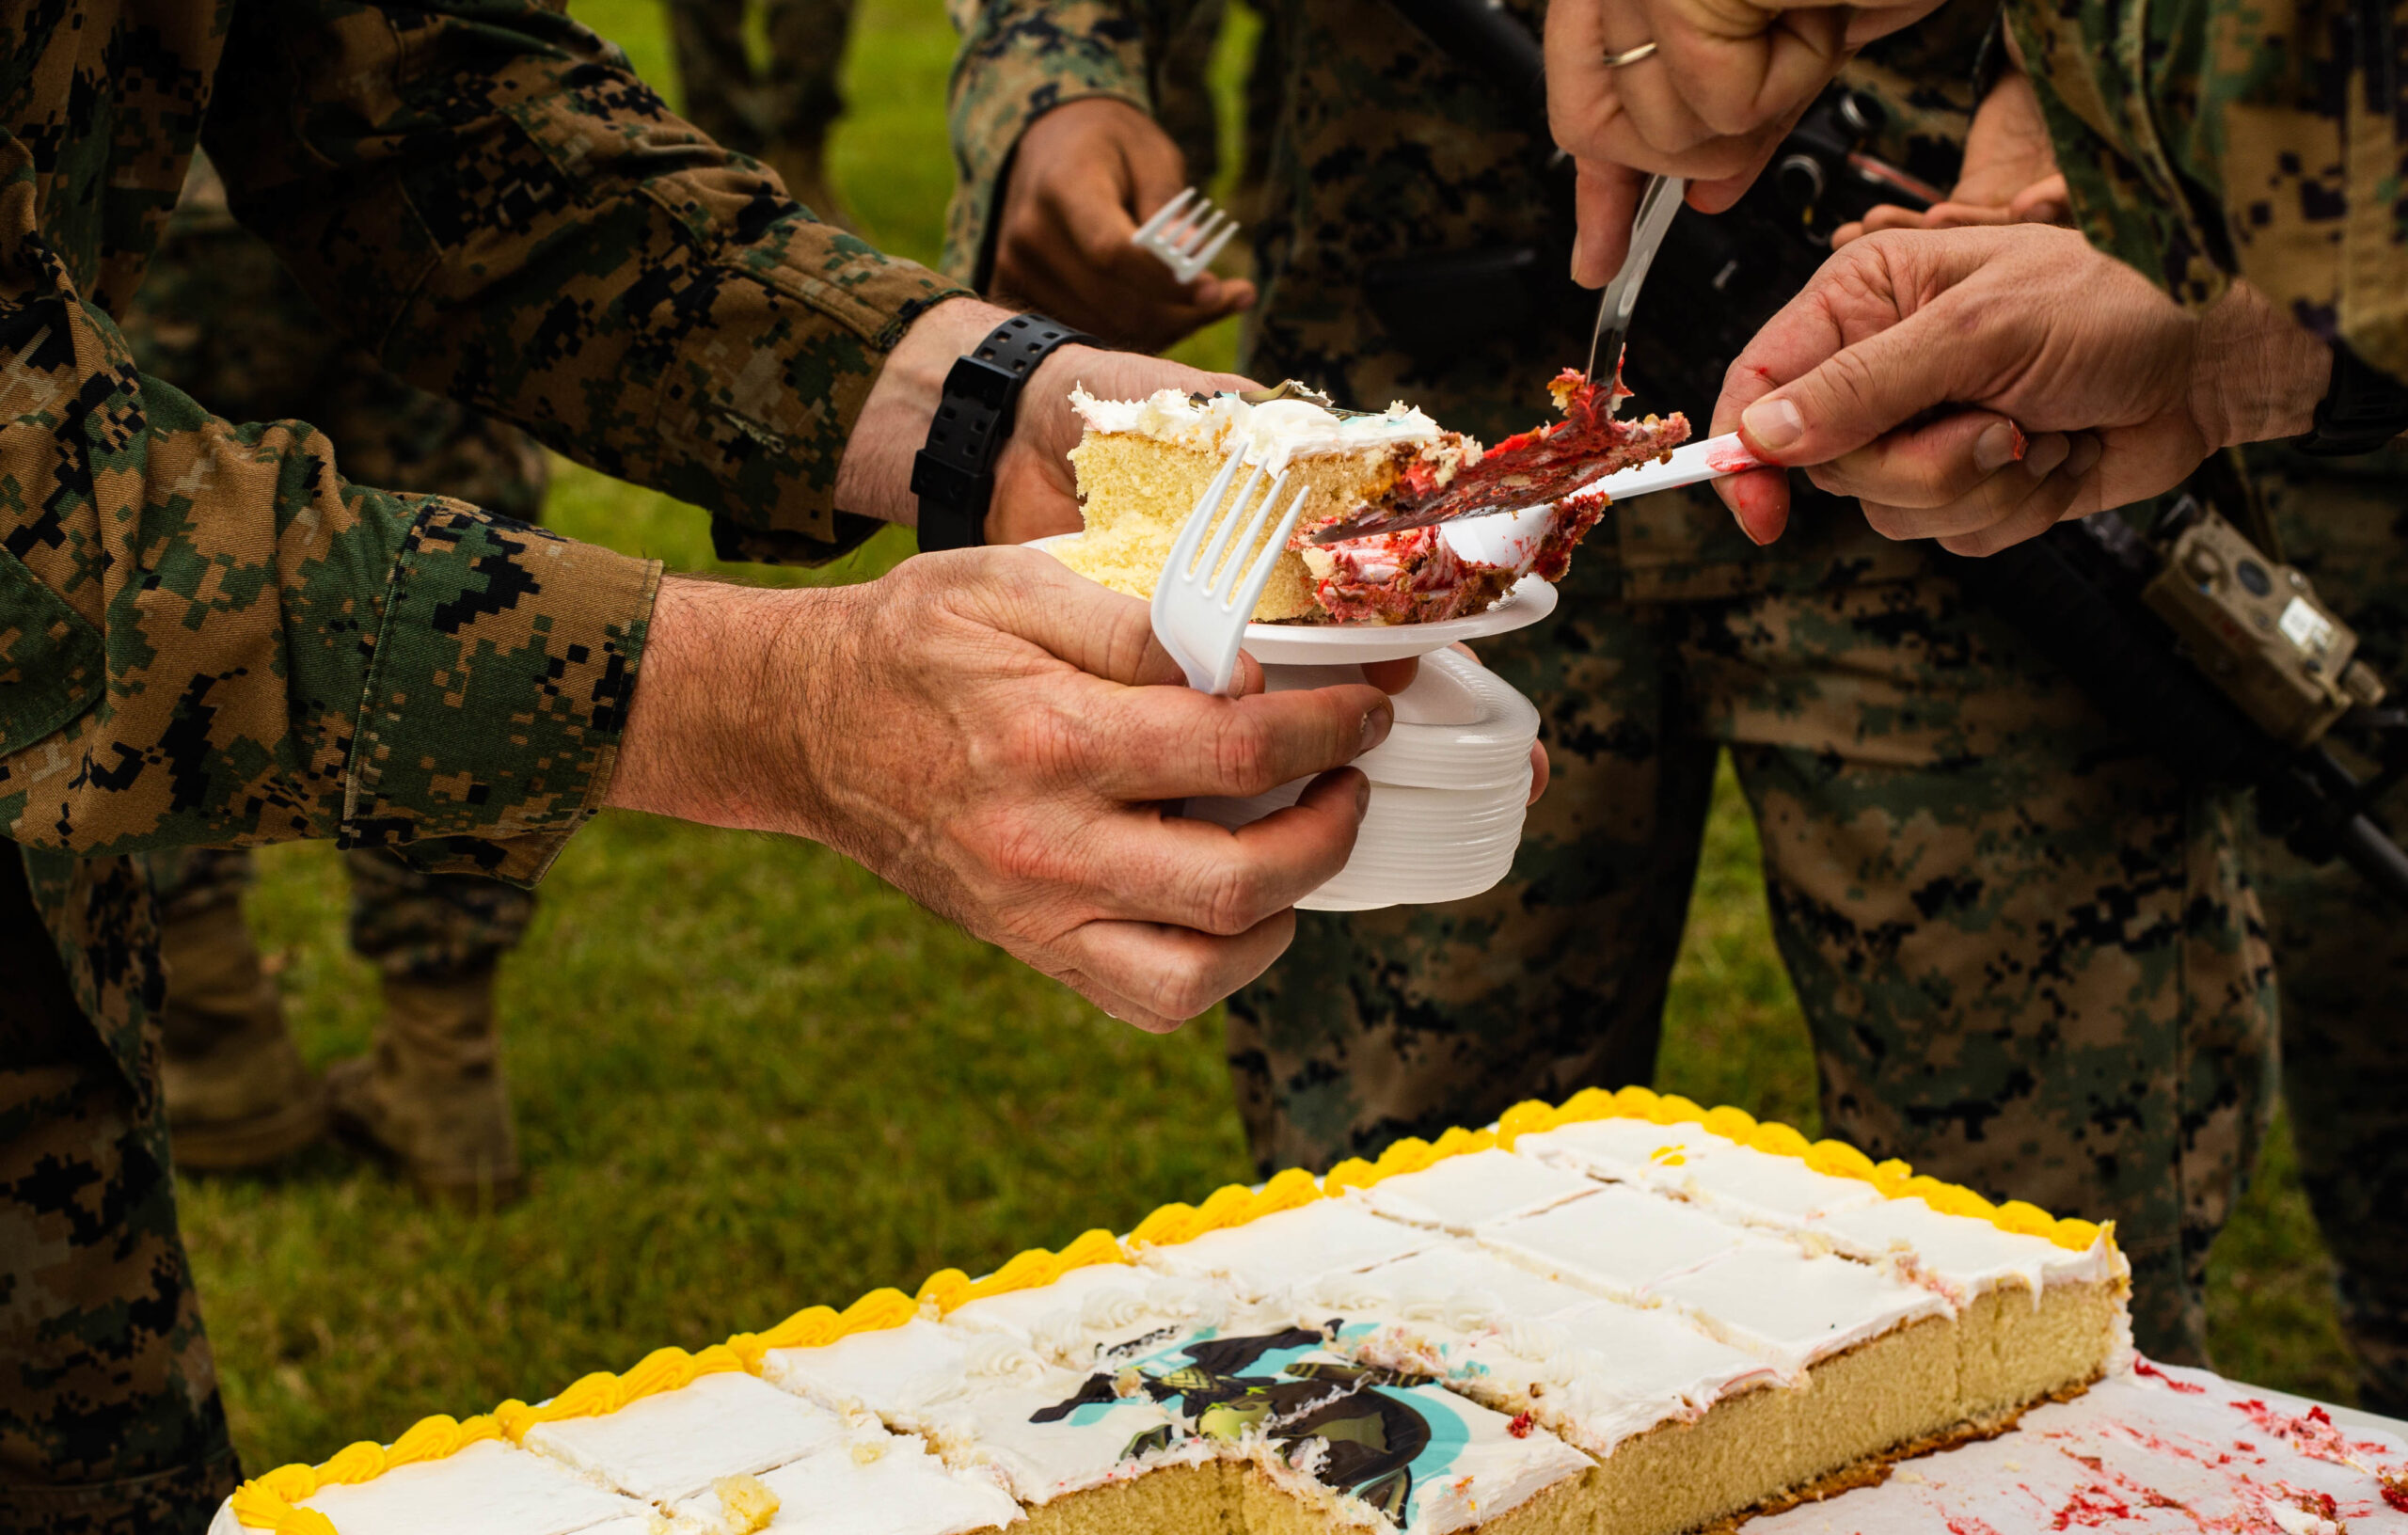 marine corps birthday cake cutting ceremony.